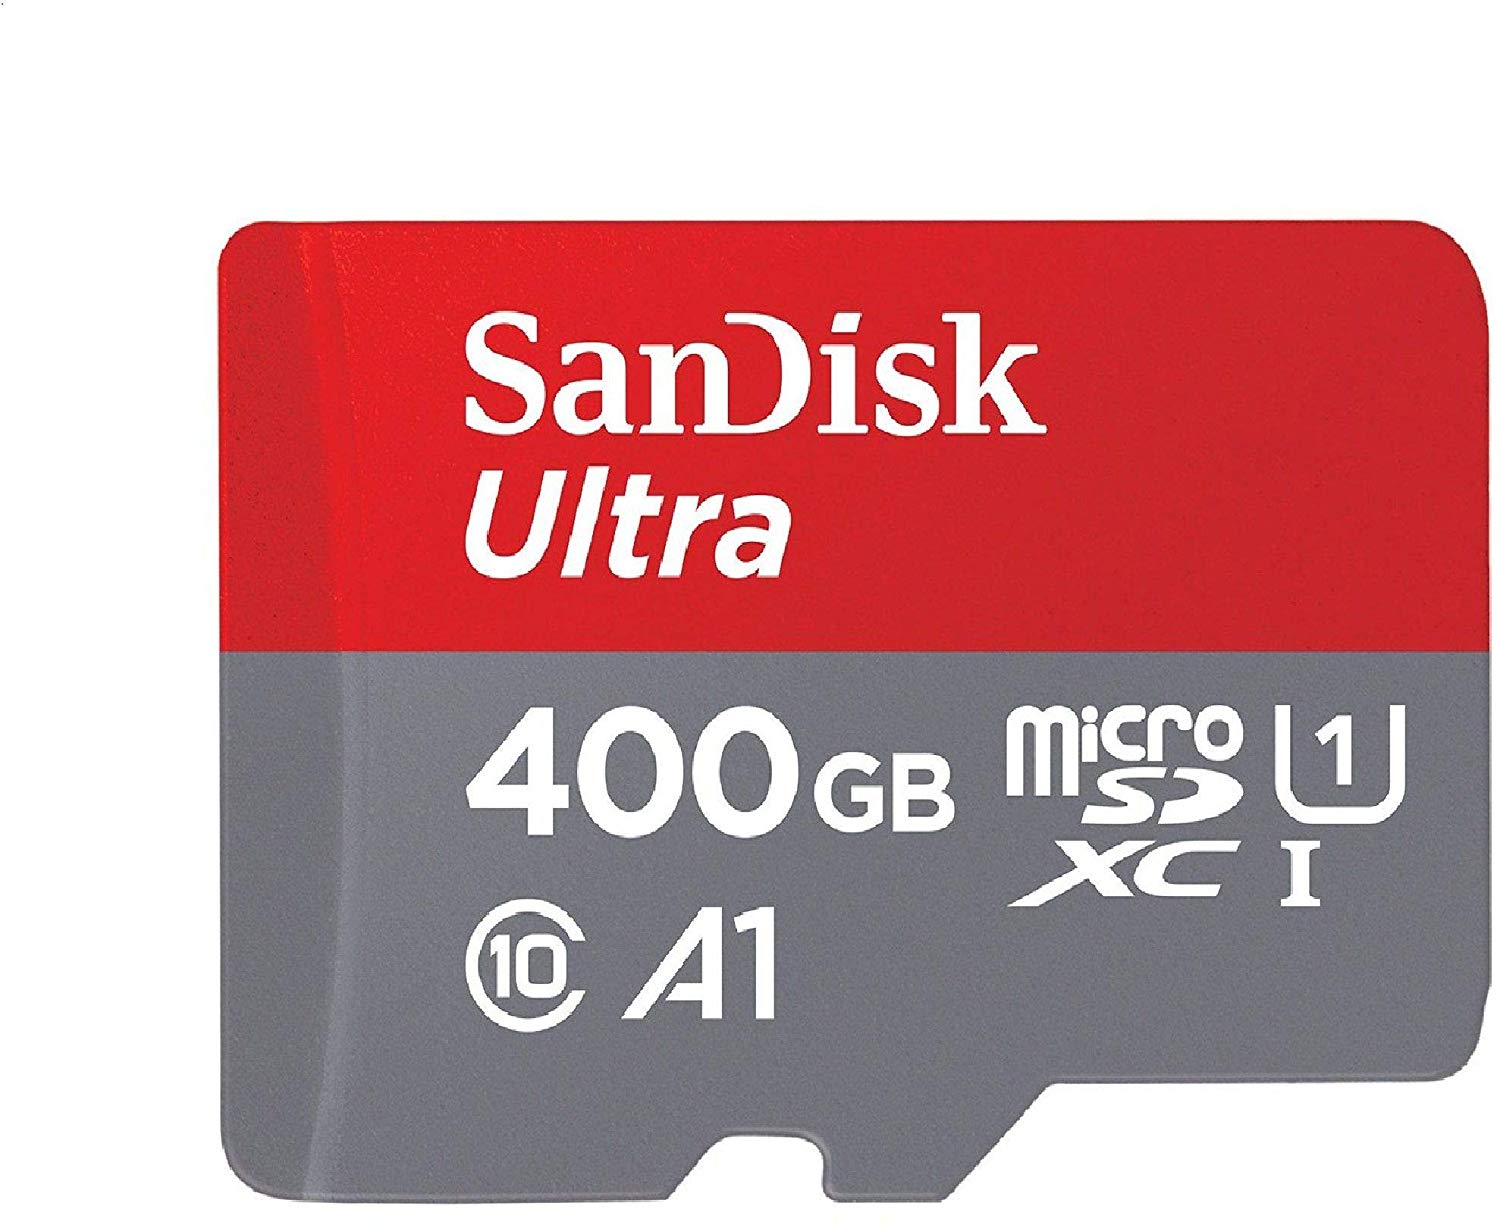 sandisk-400gb-micro-sd-card.jpg?itok=VYp